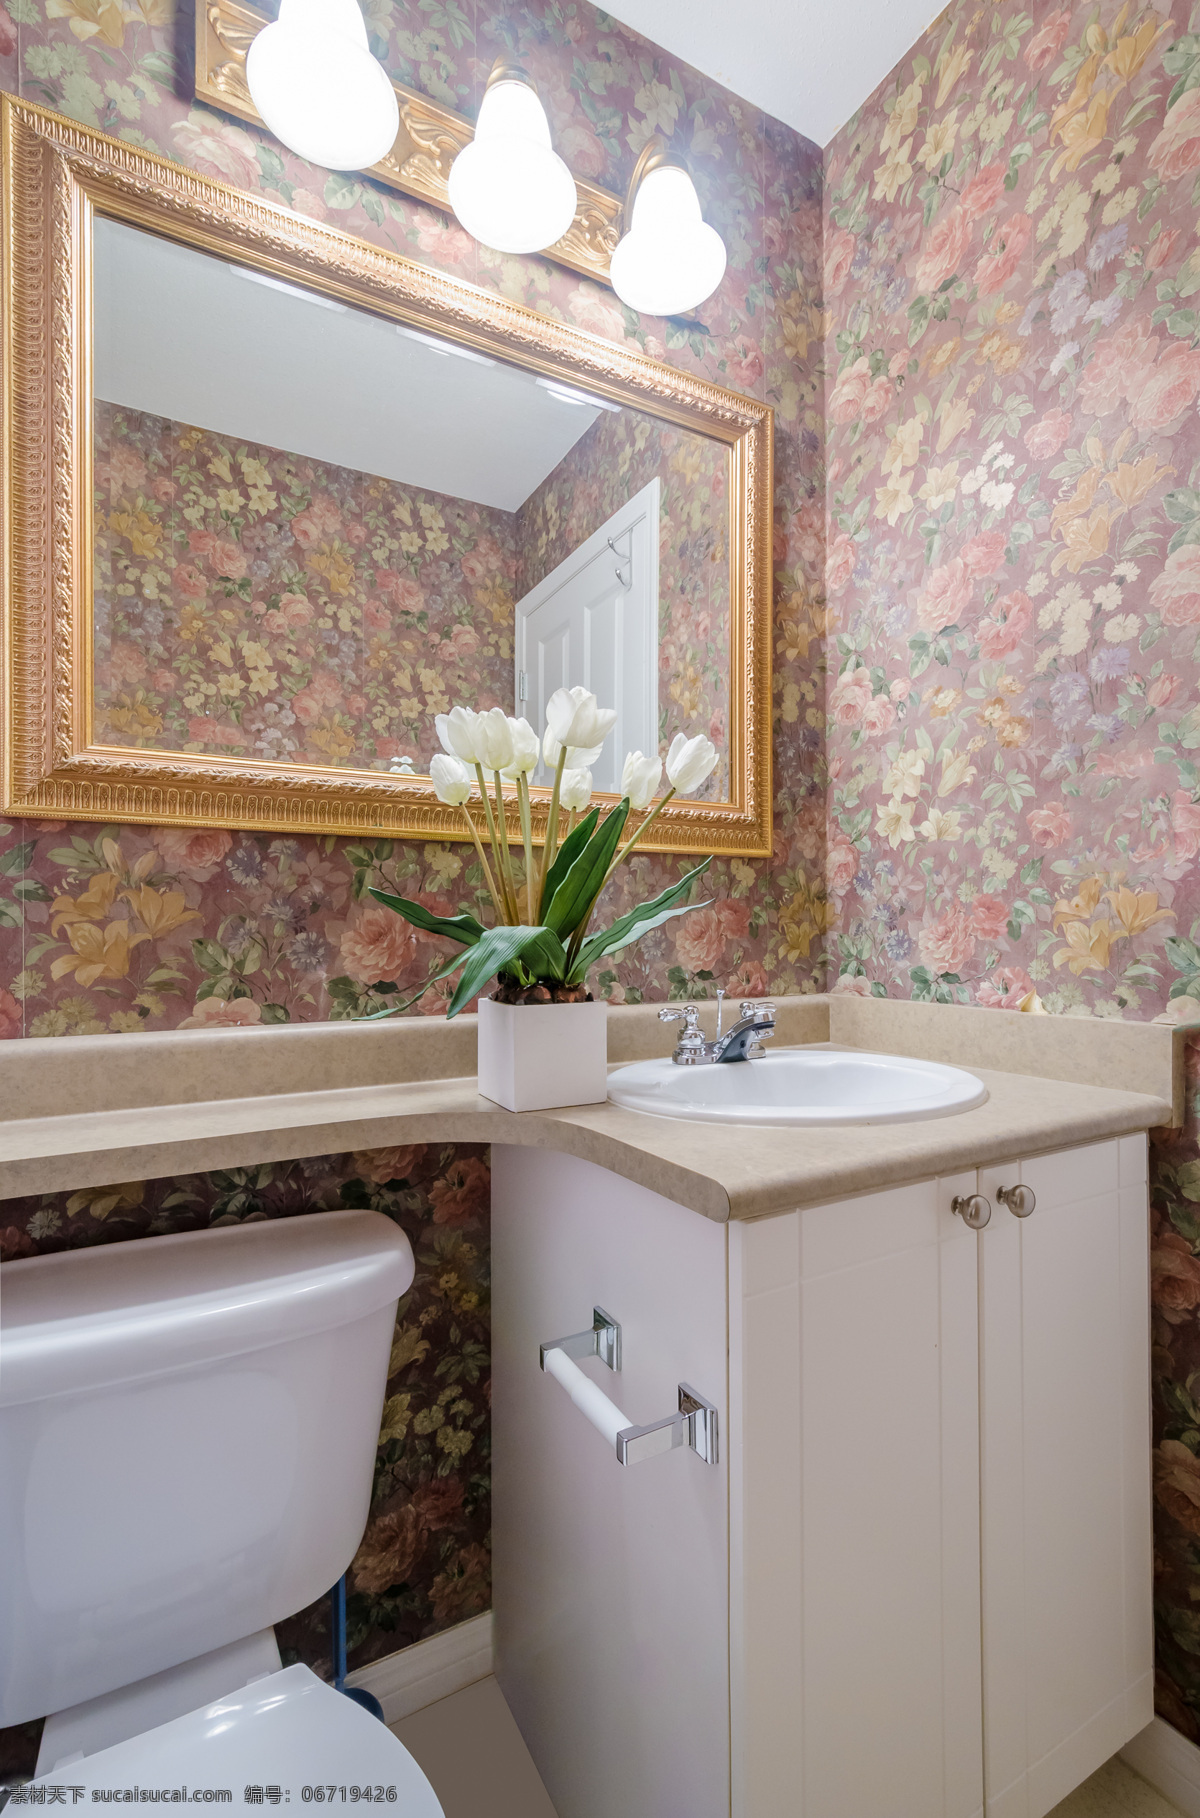 卫生间 洗手间 复古 效果图 装修图 设计图 欧式 室内设计 环境家居 灰色